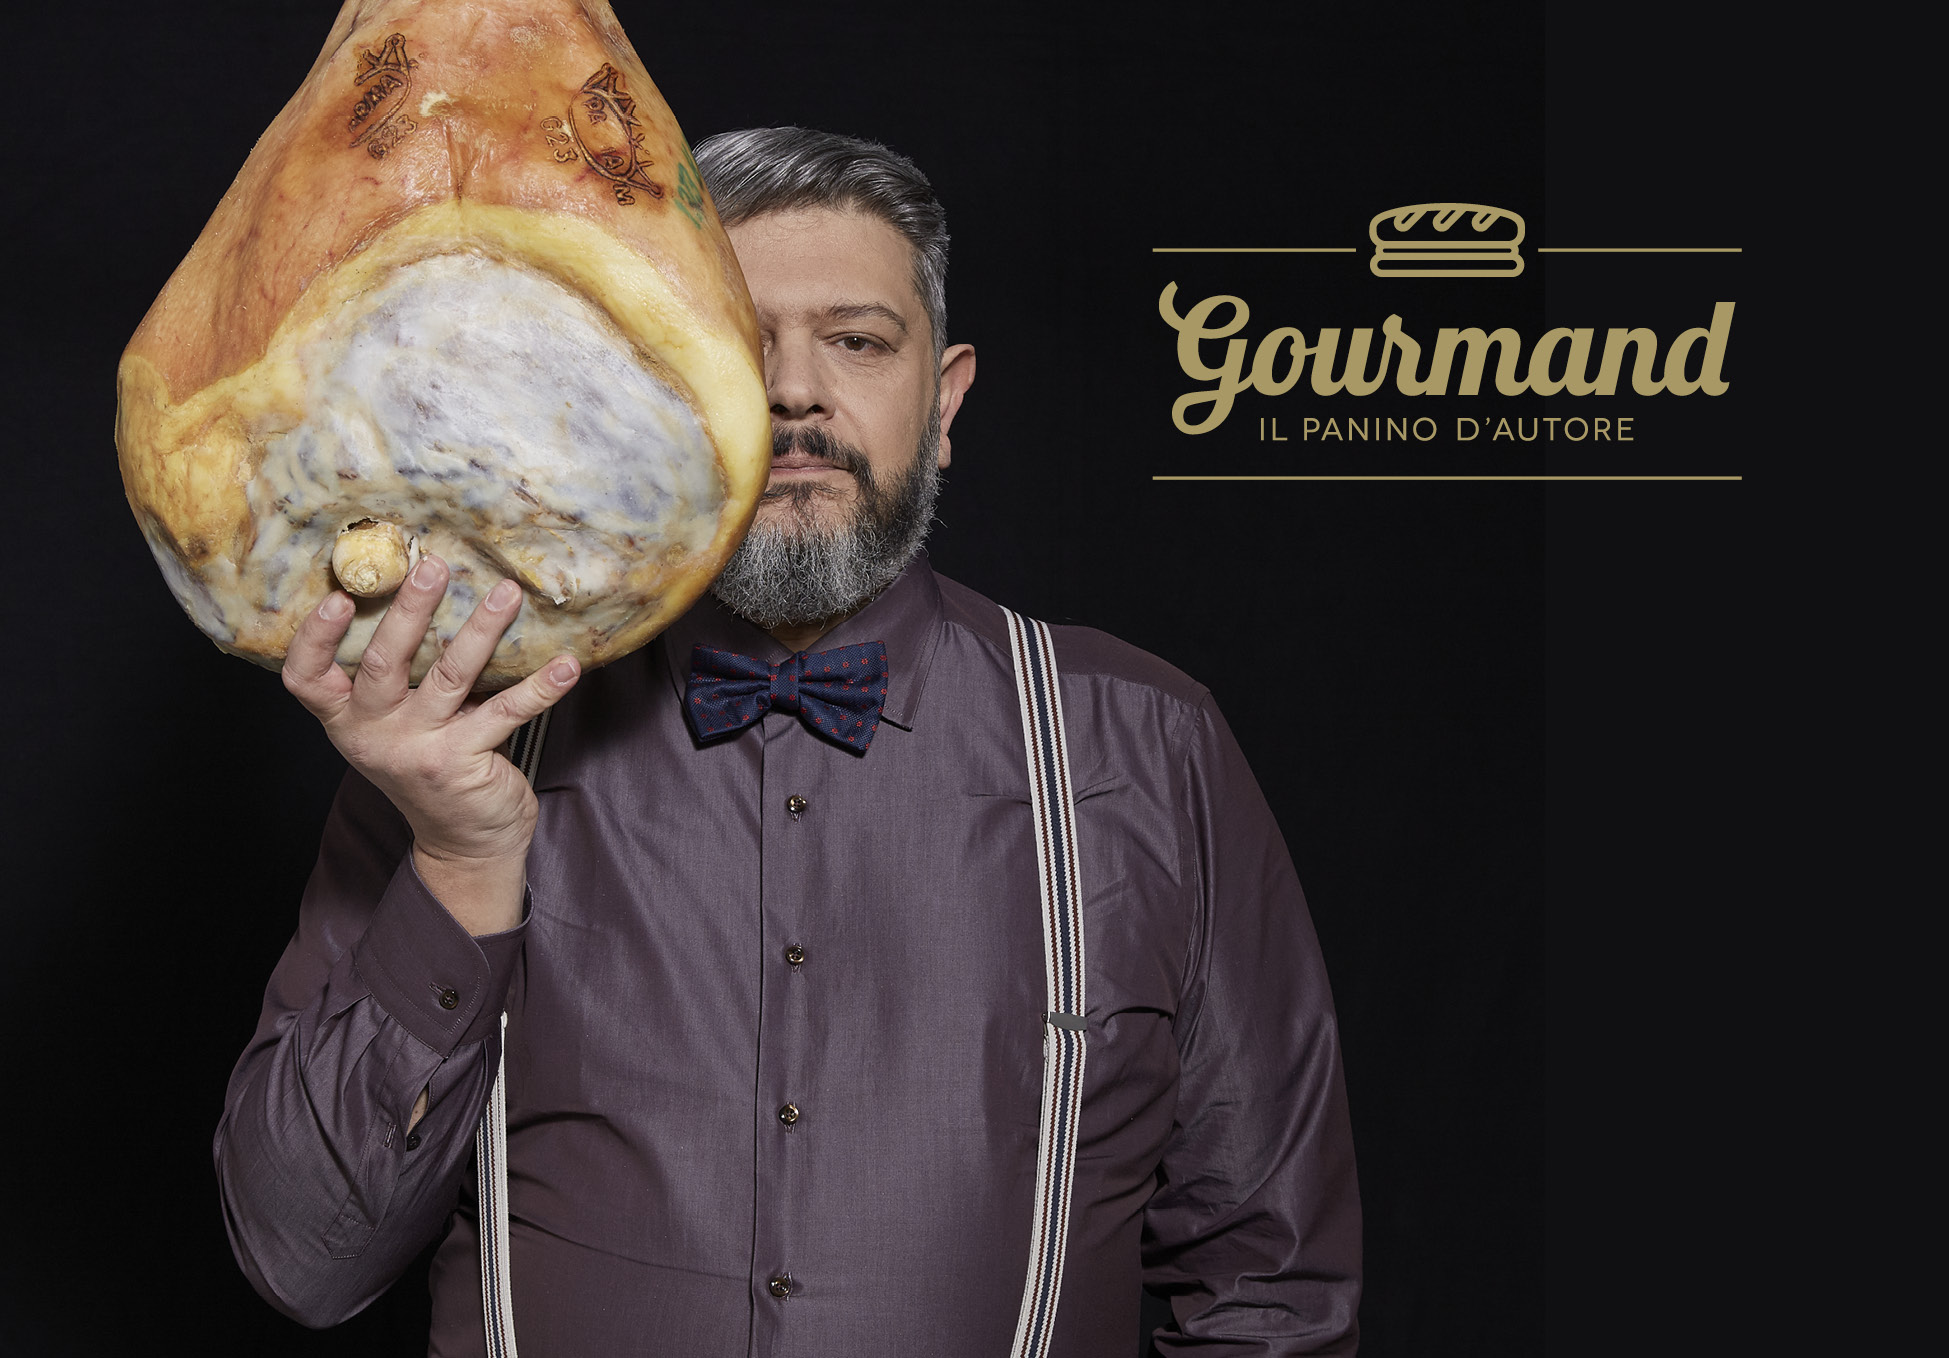 Gourmand Portrait by Remo Di Gennaro